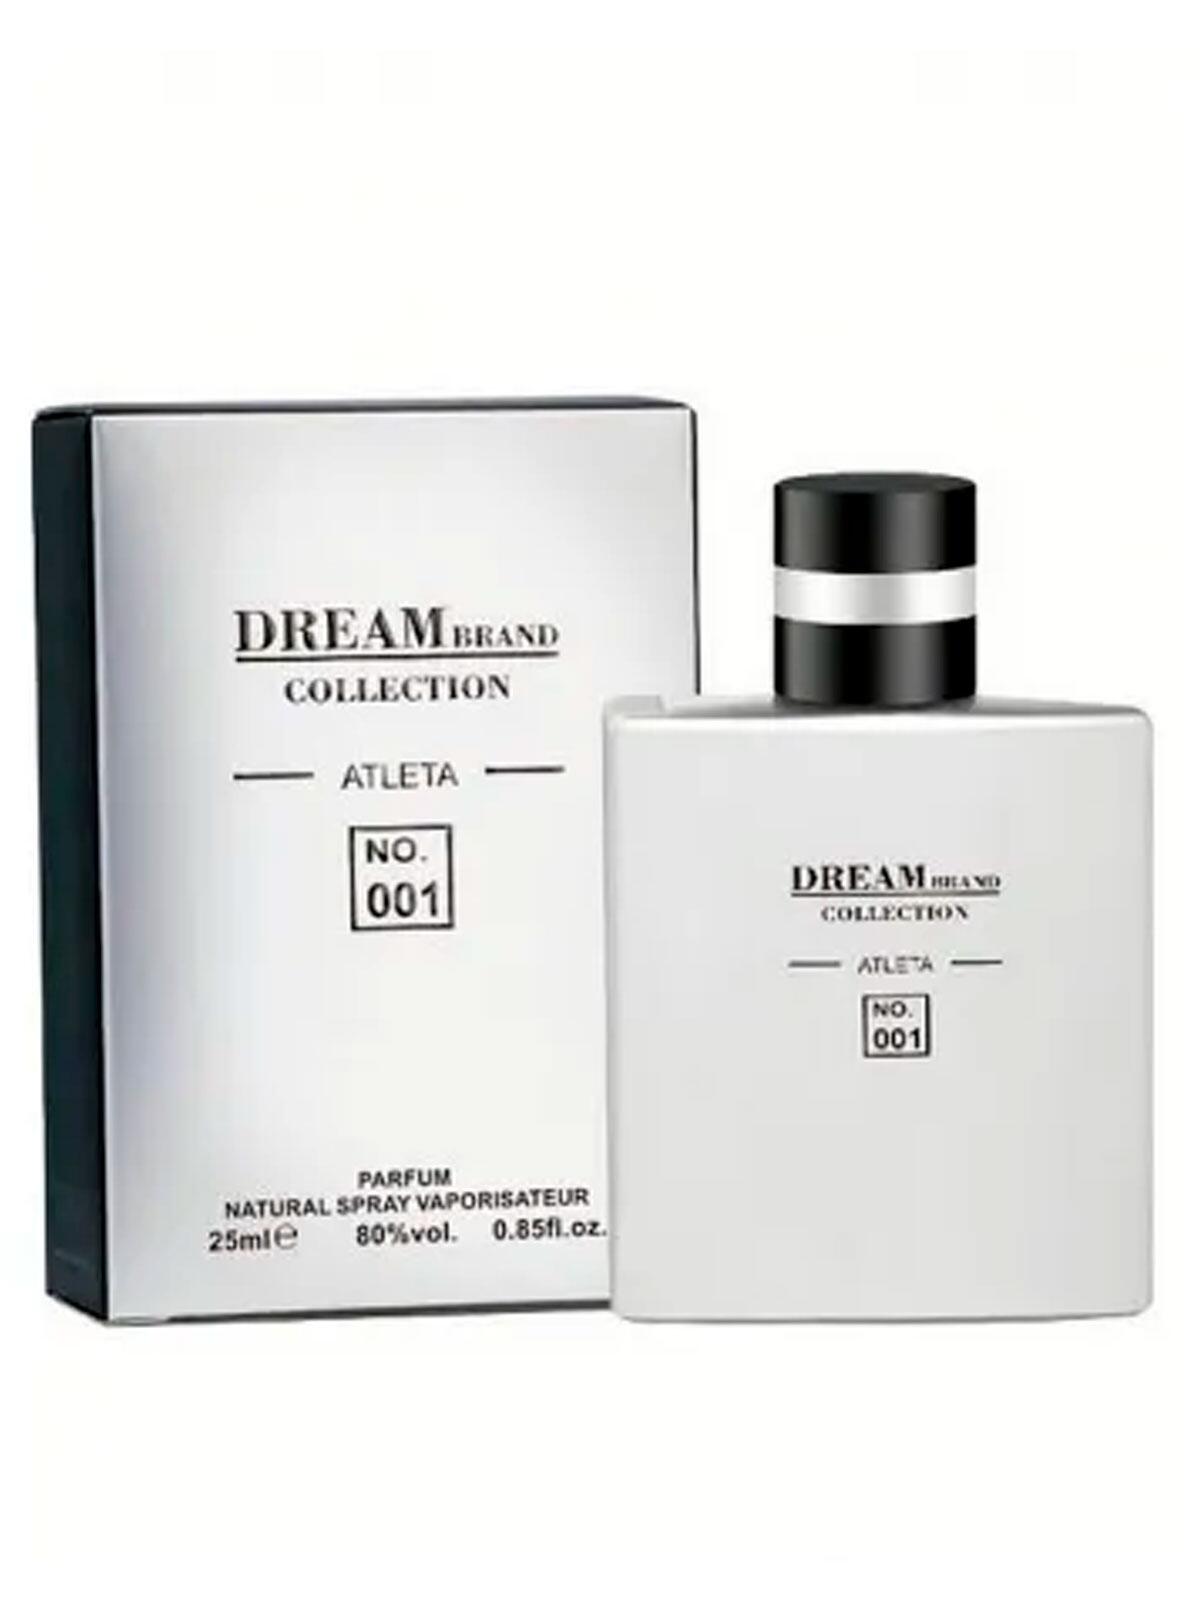 Comprar MINIATURA DREAM BRAND COLLECTION 001 ALLURE SPORT MEN 25ML -  R$59,90 - Top Parfum - O melhor da perfumaria em suas mãos